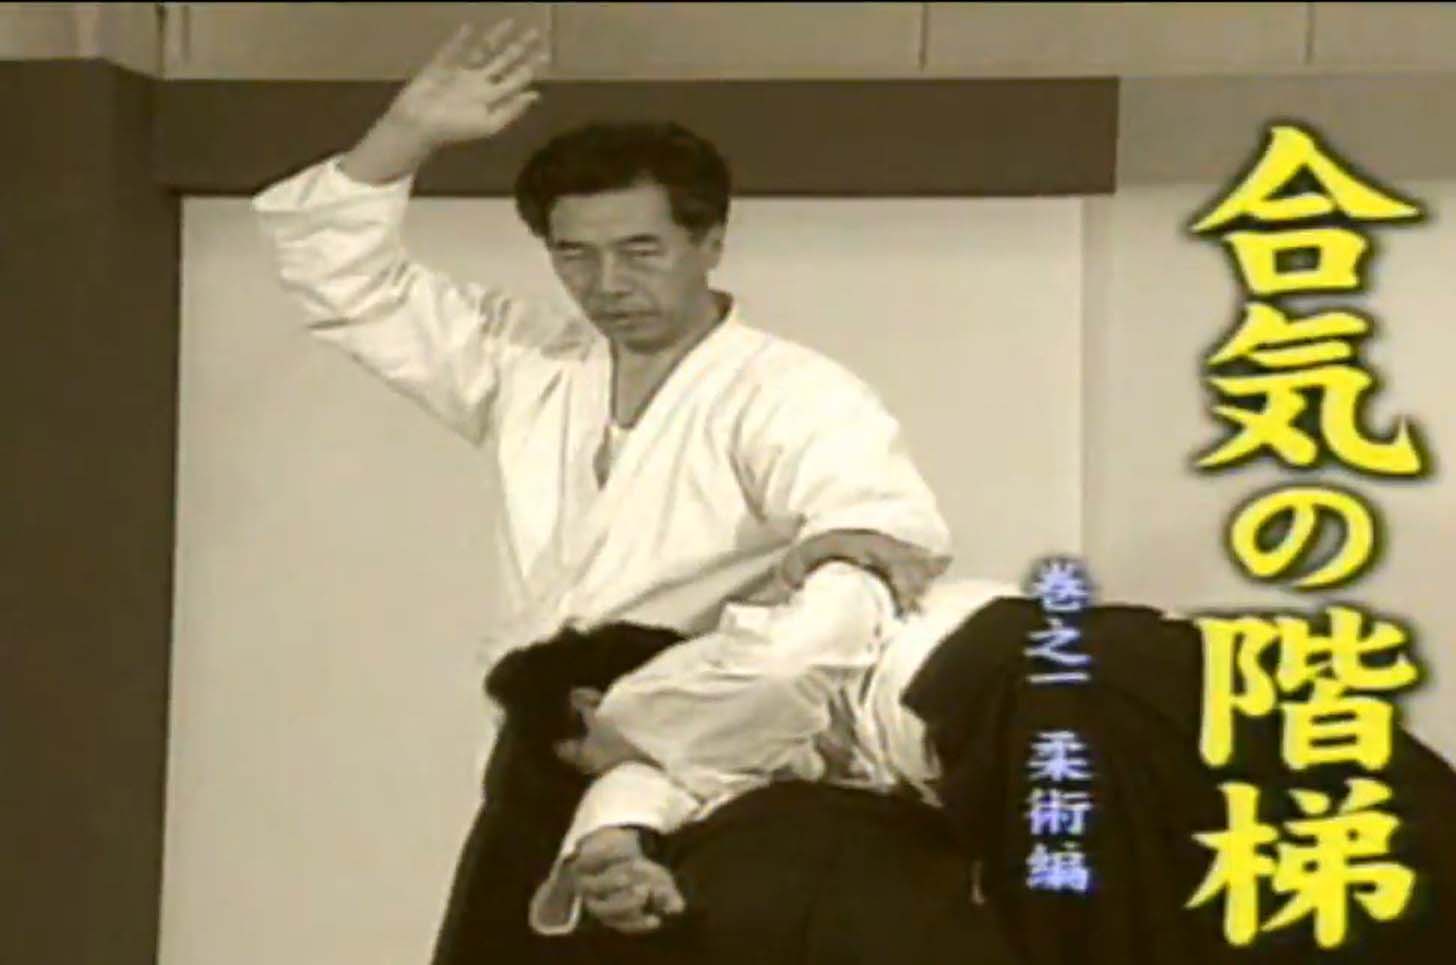 آموزش آیکیدو - استاد کوگن سوگاساوا - قسمت 1